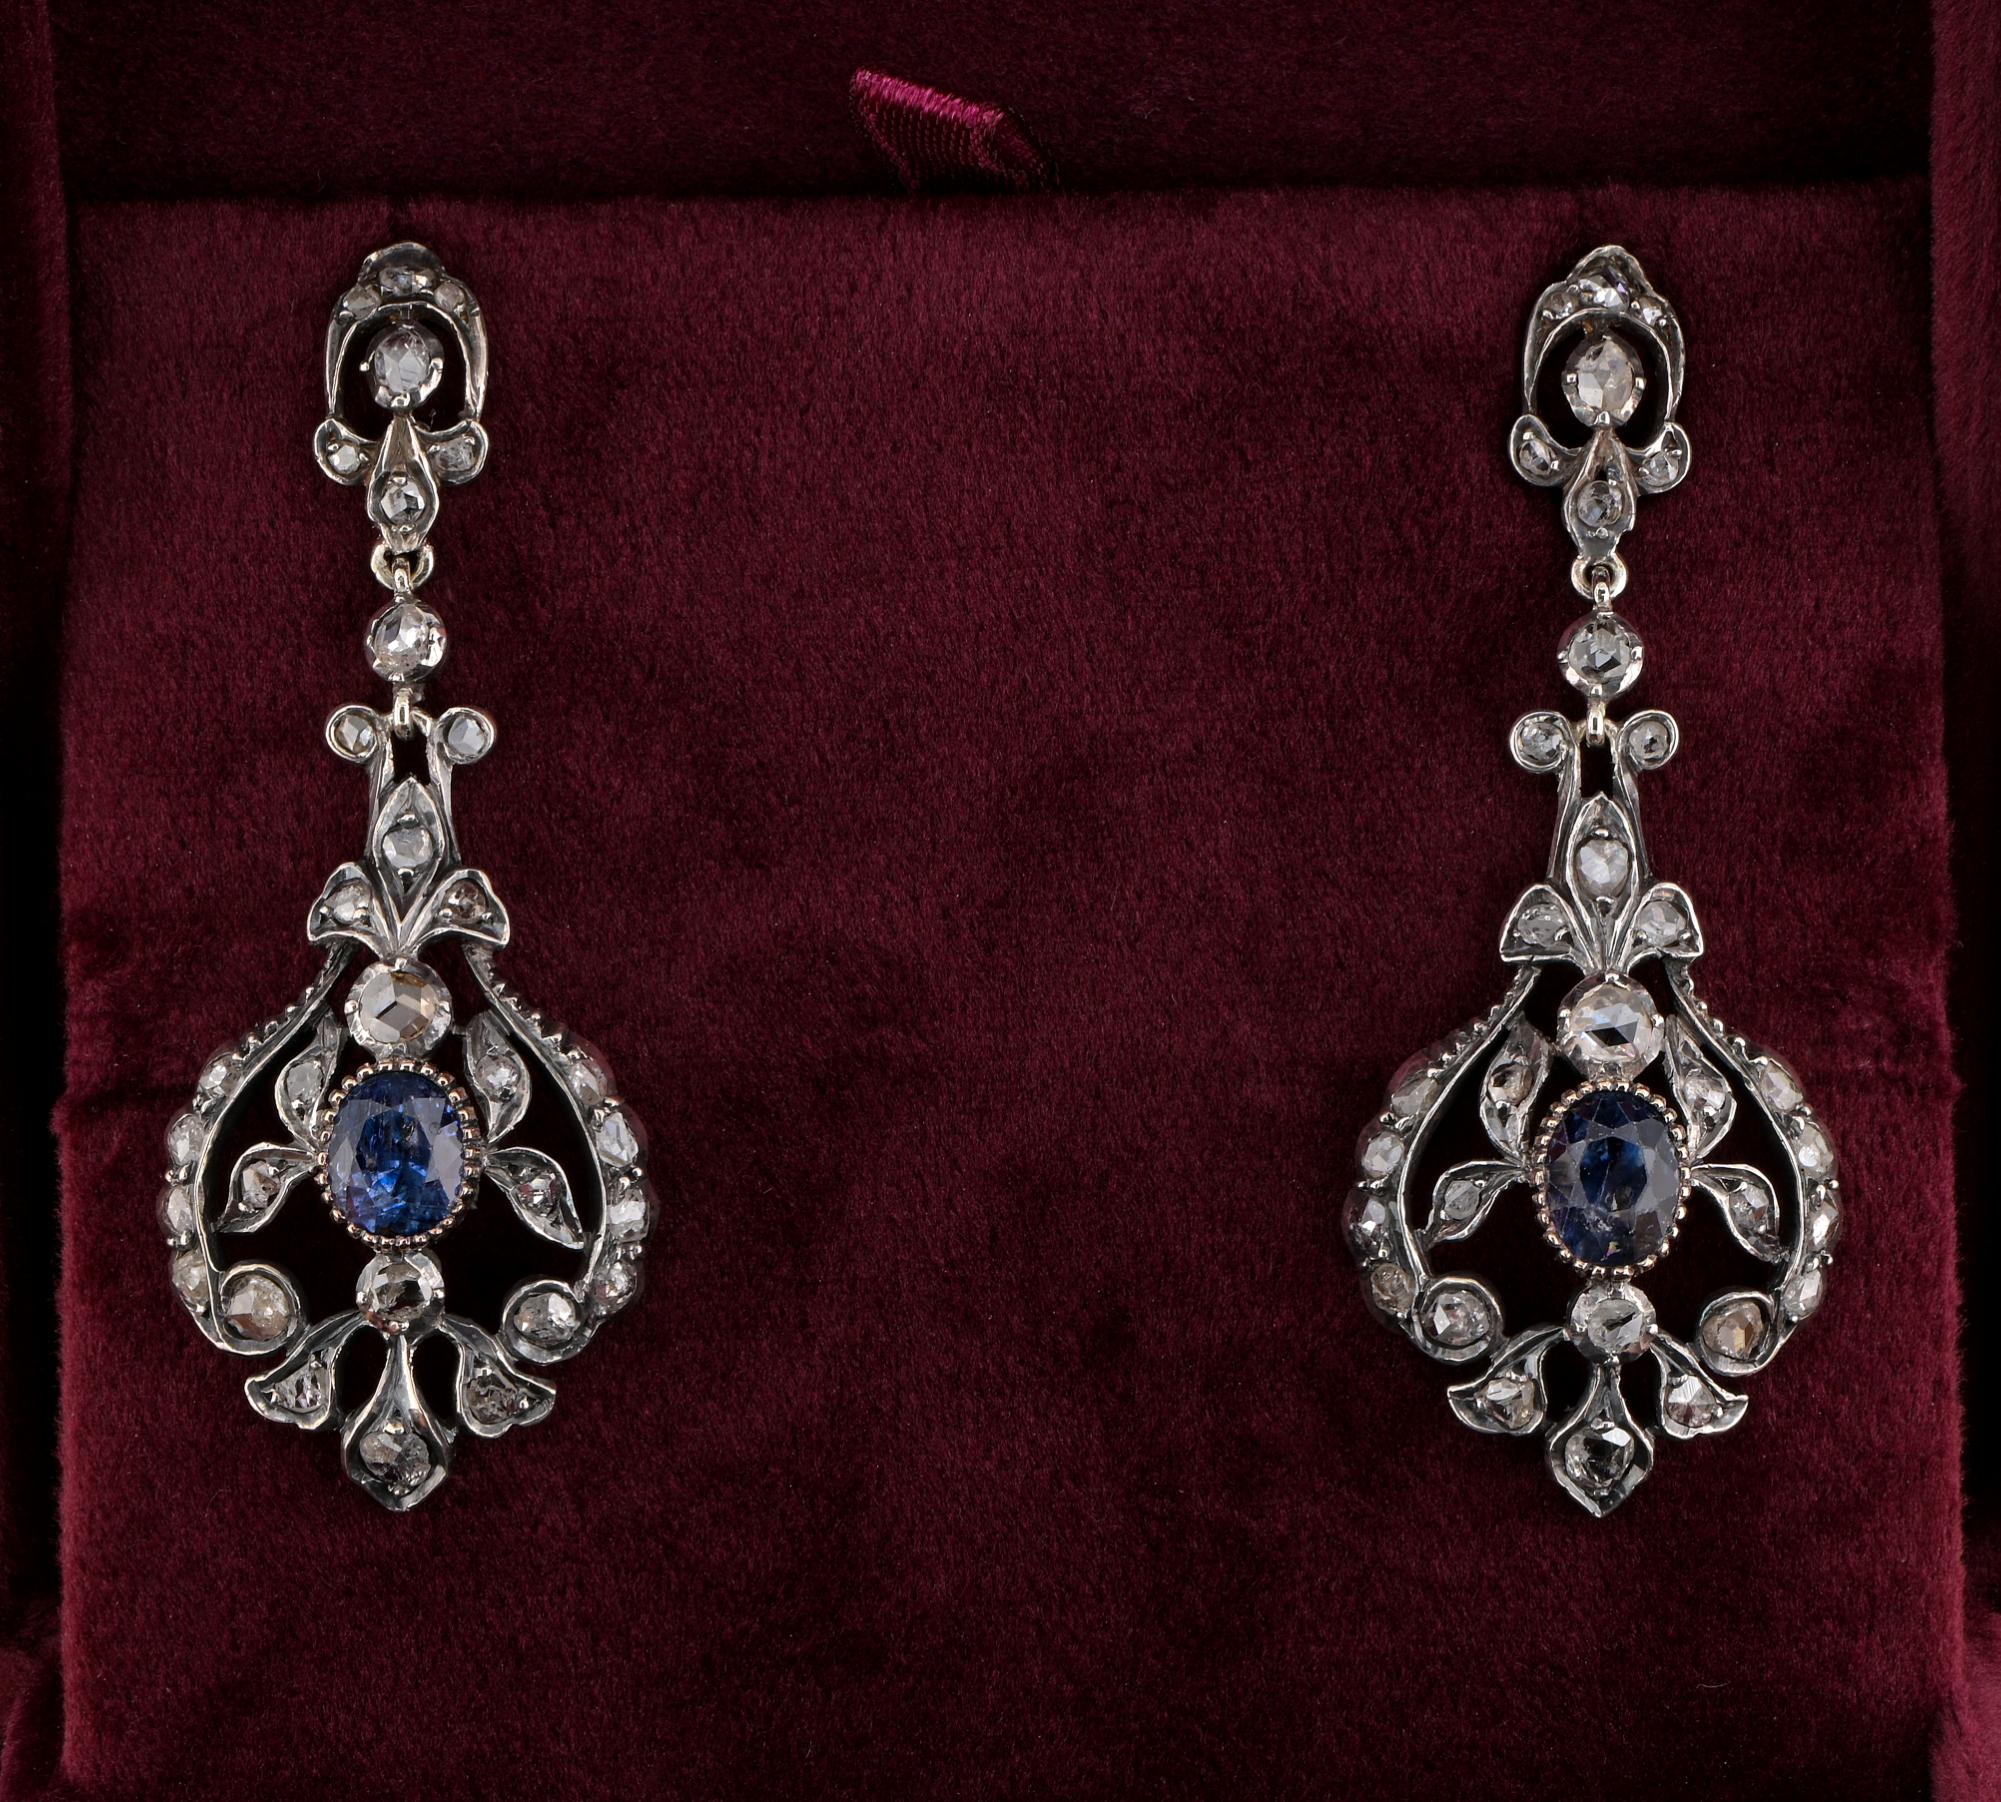 Diese schönen antiken Ohrringe sind 1890 circa
Handgefertigt aus massivem 18 KT Silber gekrönt
Bezaubernde Schriftrolle in fabelhaftem durchbrochenem Design
Durchgängig mit einer Auswahl von 70 antiken Diamanten im Rosenschliff in verschiedenen